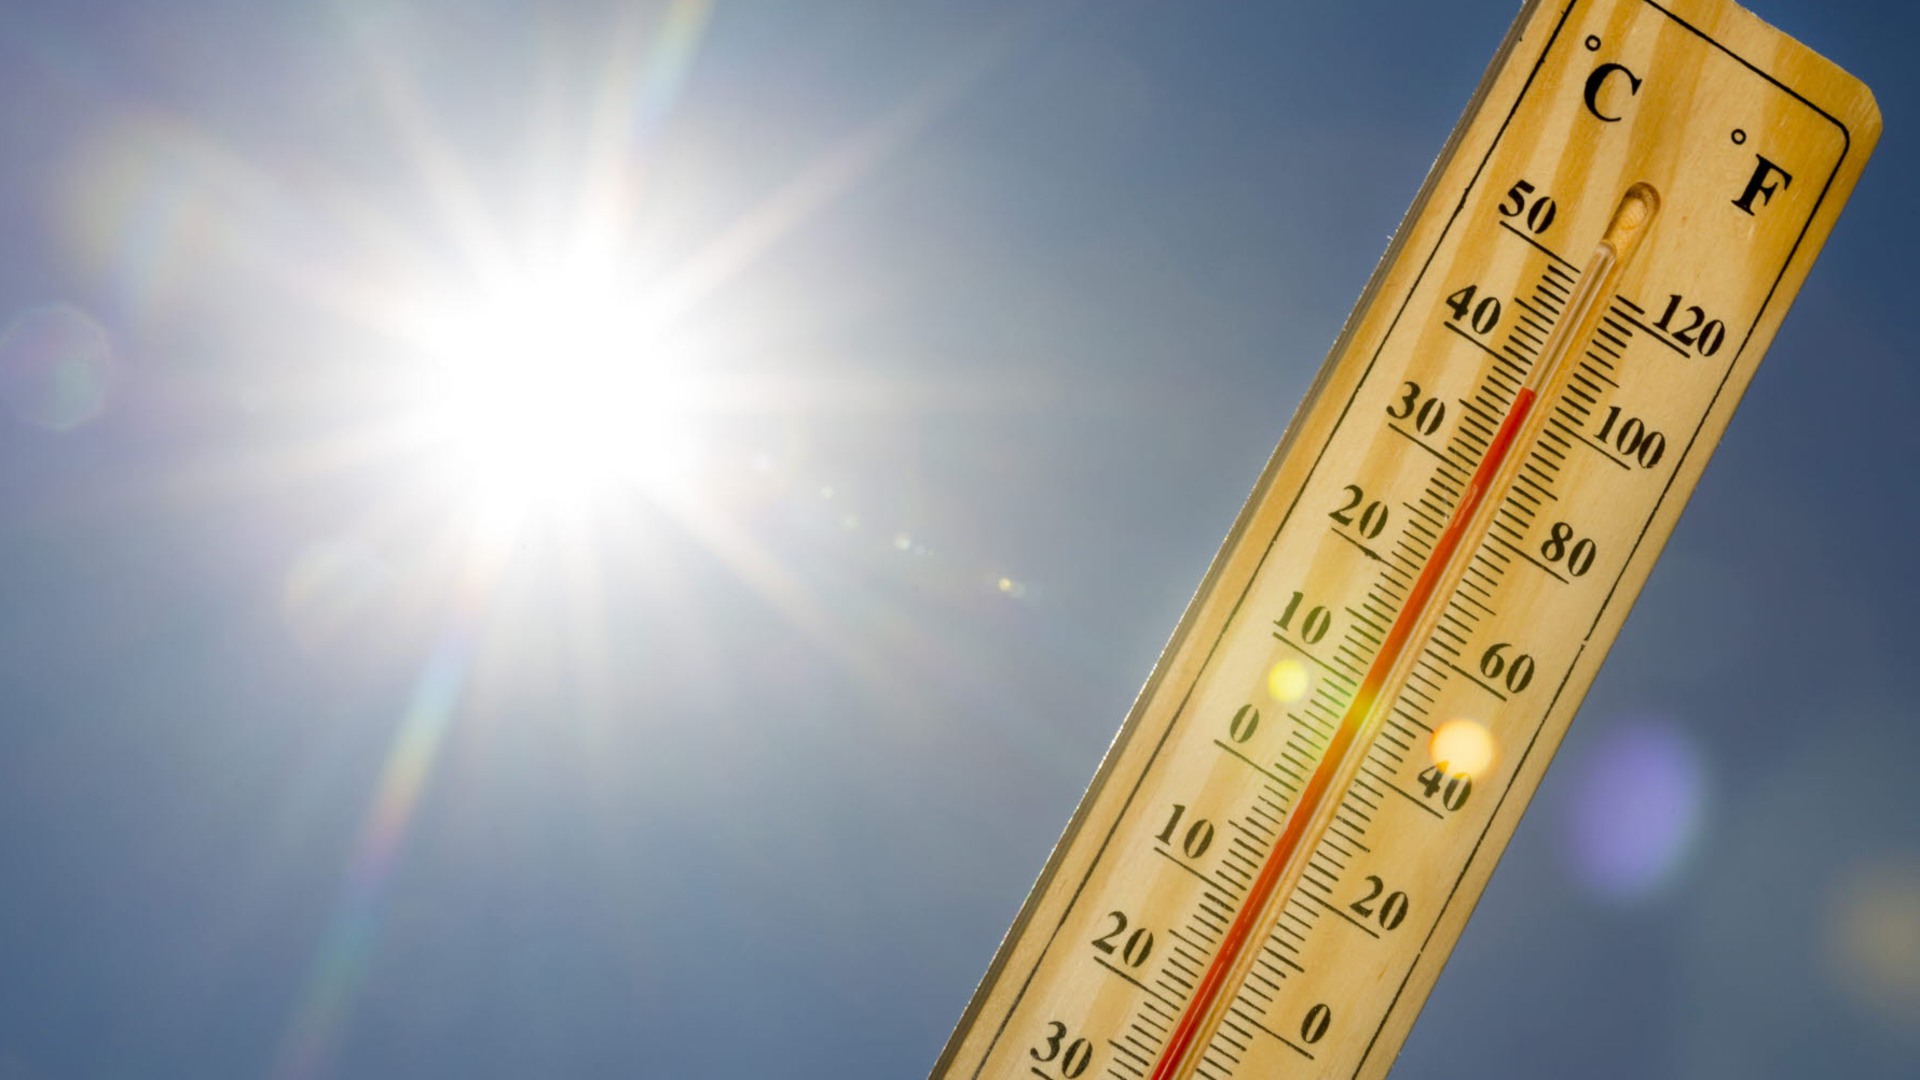 En termometer visar 38 grader, i bakgrunden syns blå himmel och solen.